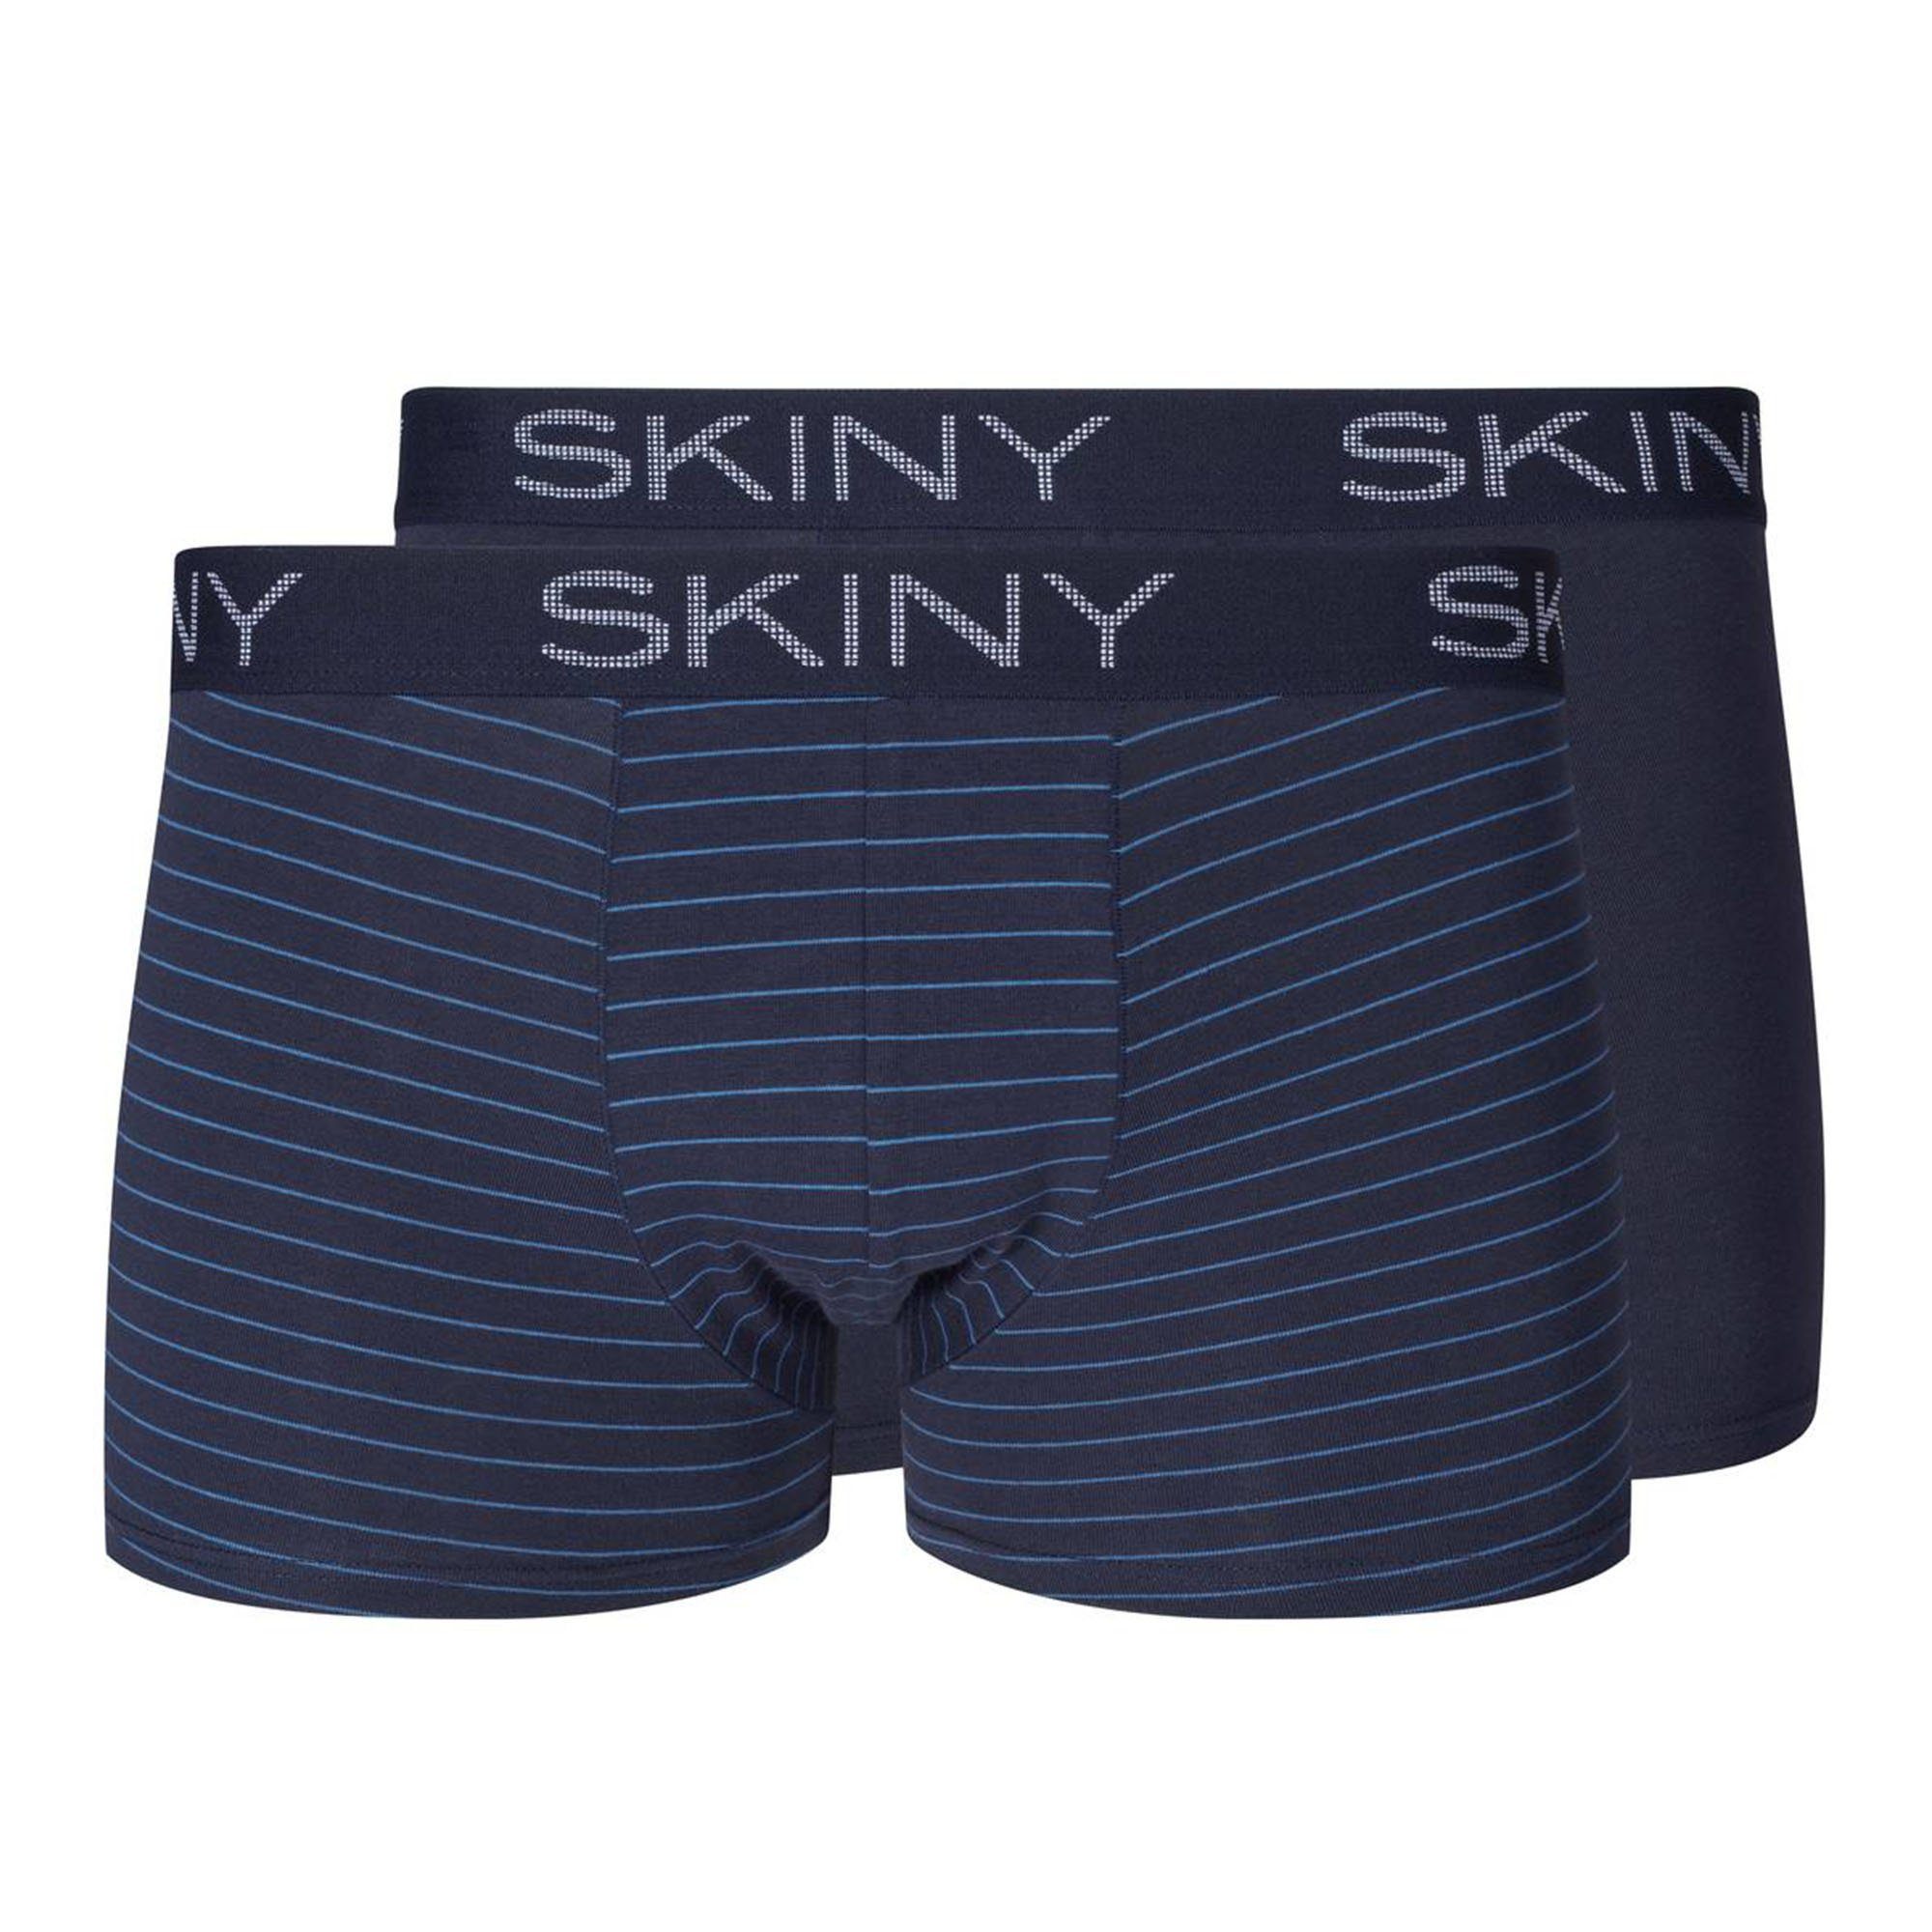 Skiny Boxer Herren Boxer Short, 2er Pack - Trunks, Pants Blau